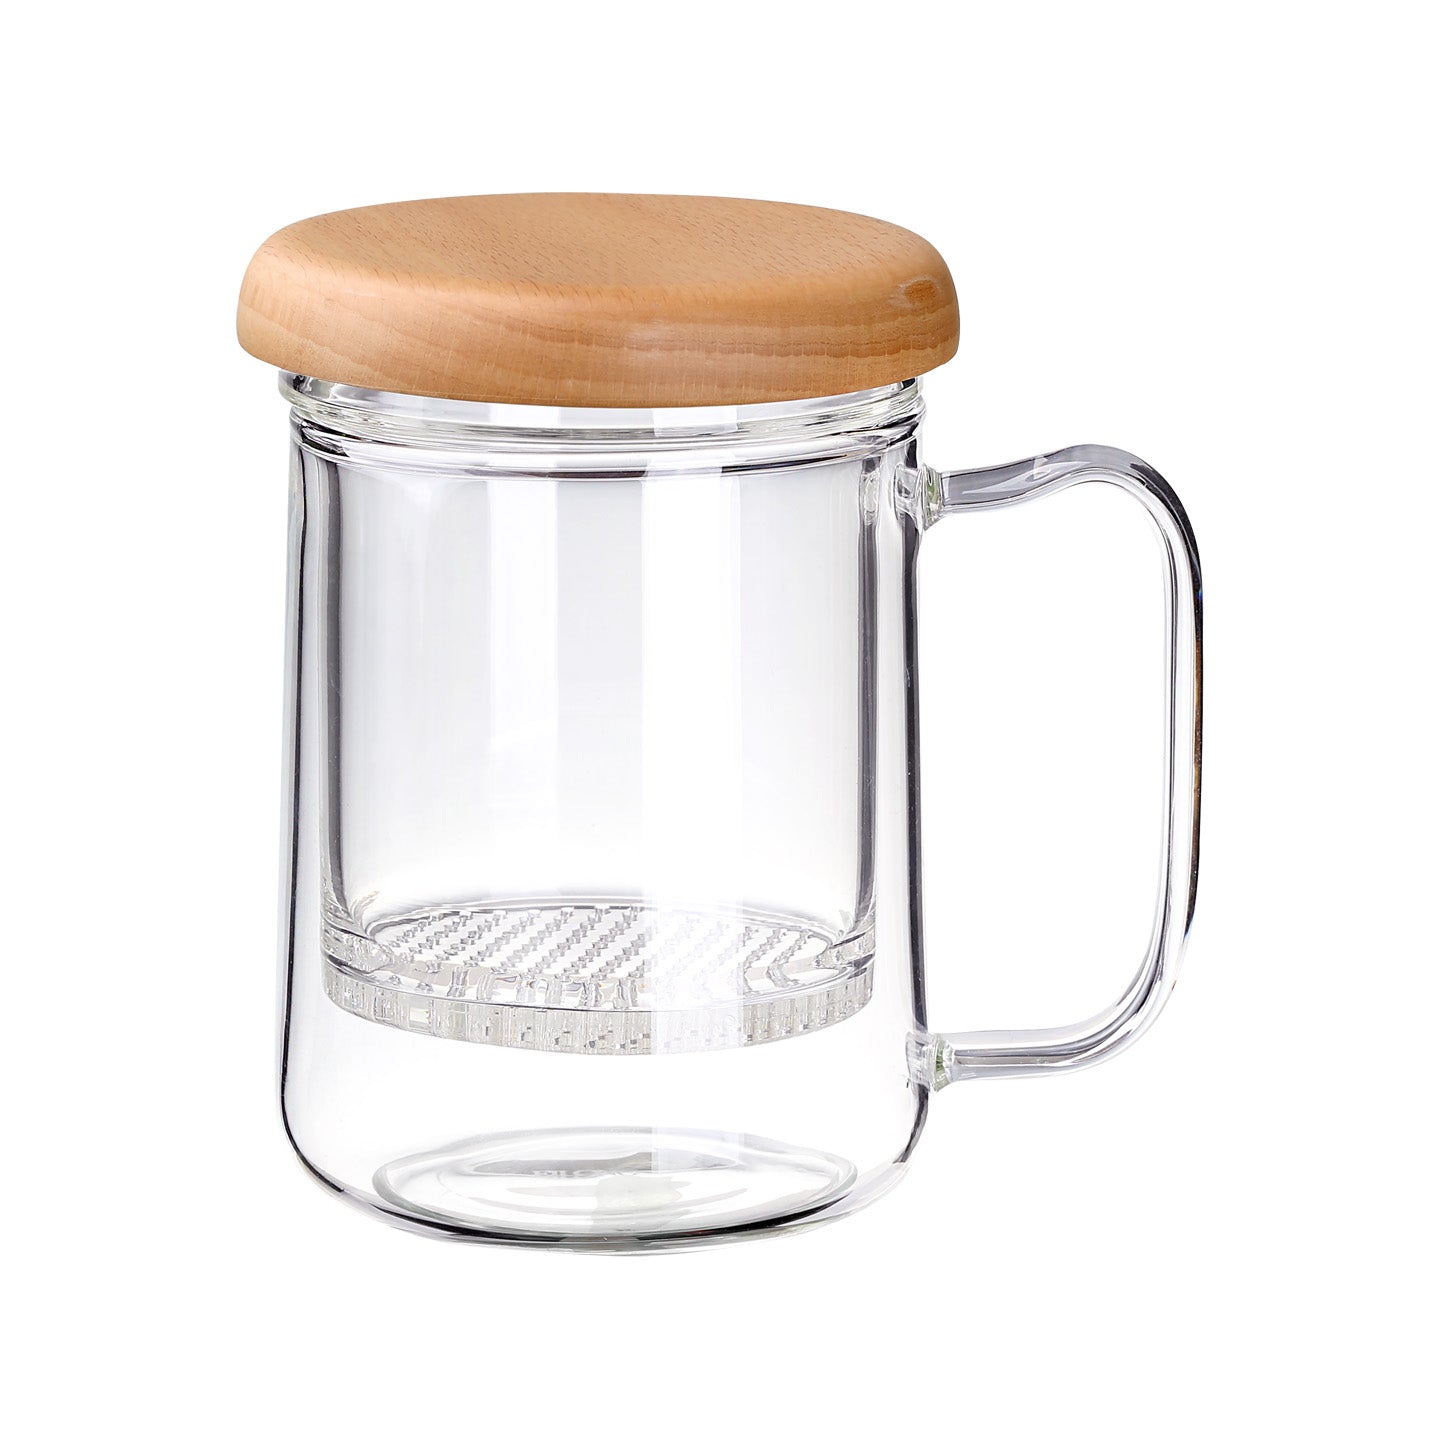 https://www.eilong.com/cdn/shop/products/tea-mug-infuser-shimmer-glass-15oz-beech.jpg?v=1654839810